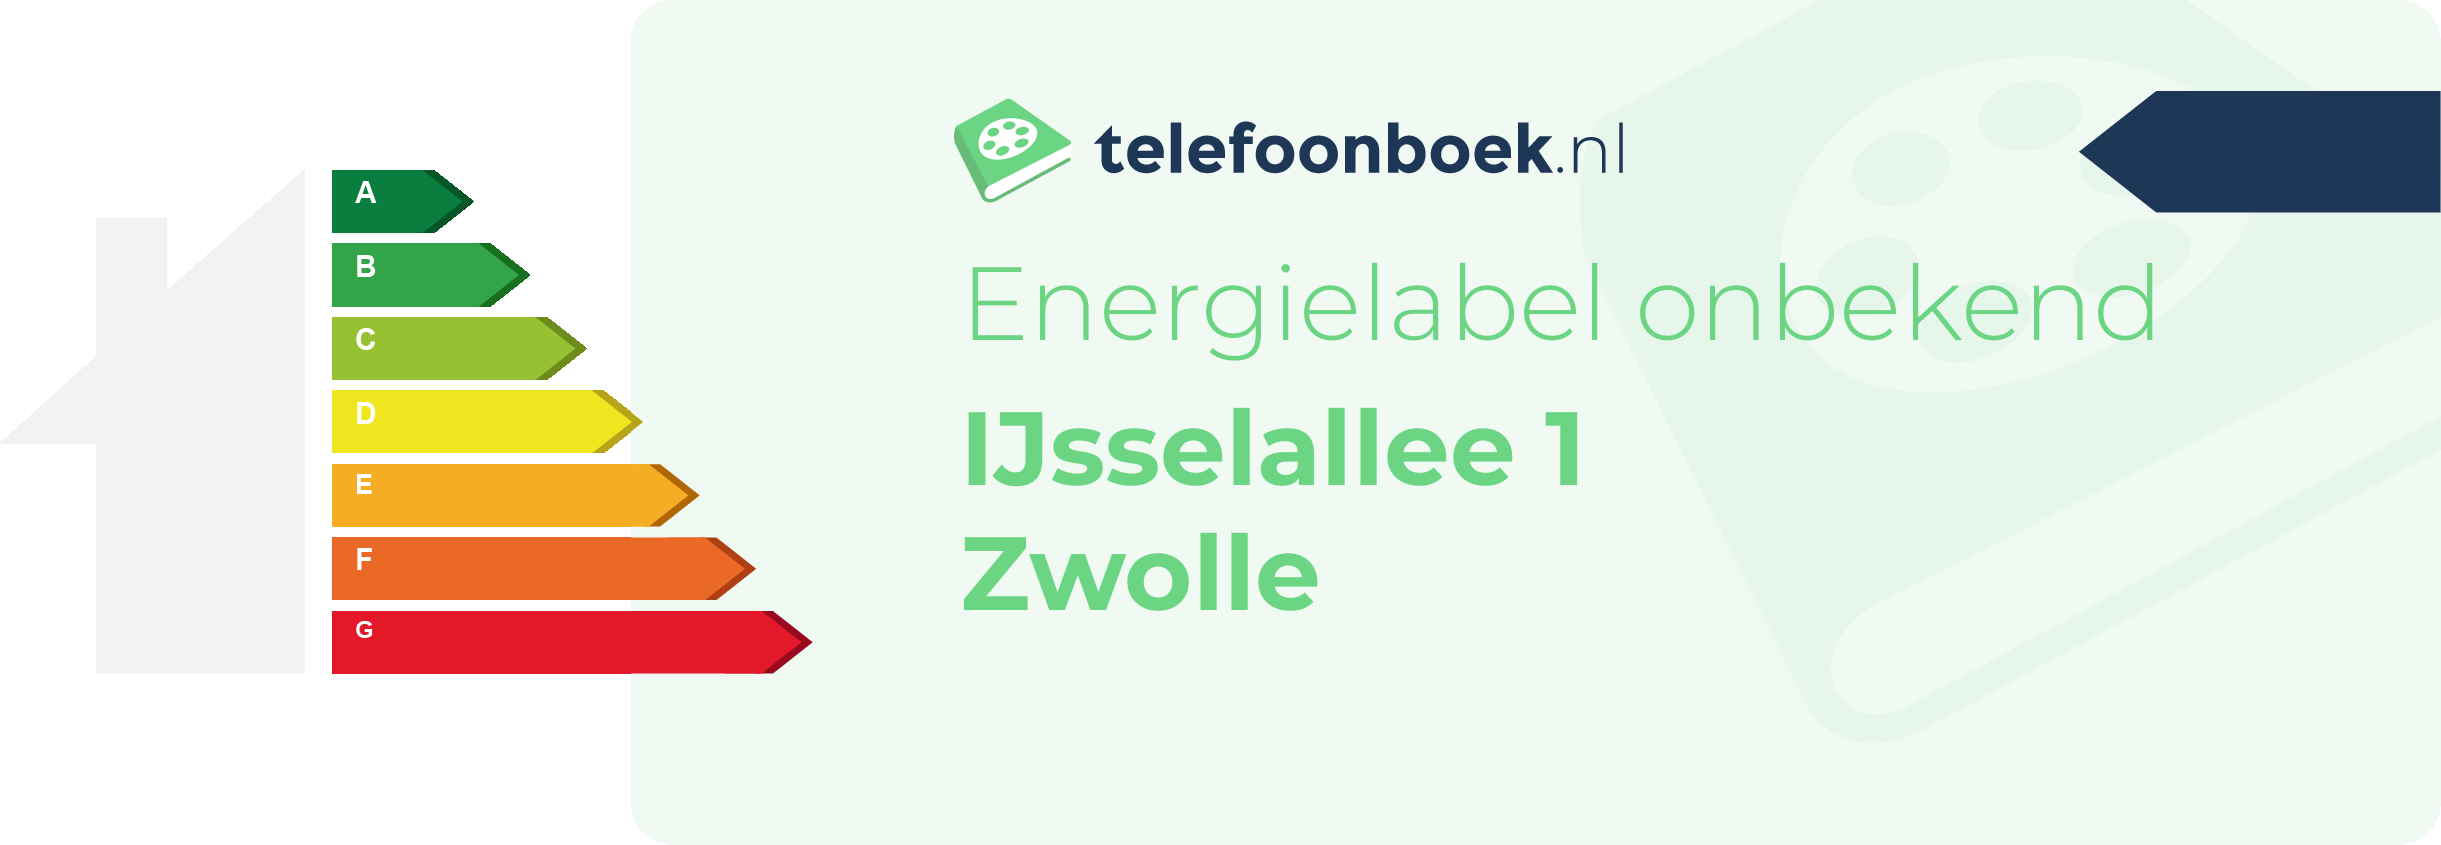 Energielabel IJsselallee 1 Zwolle